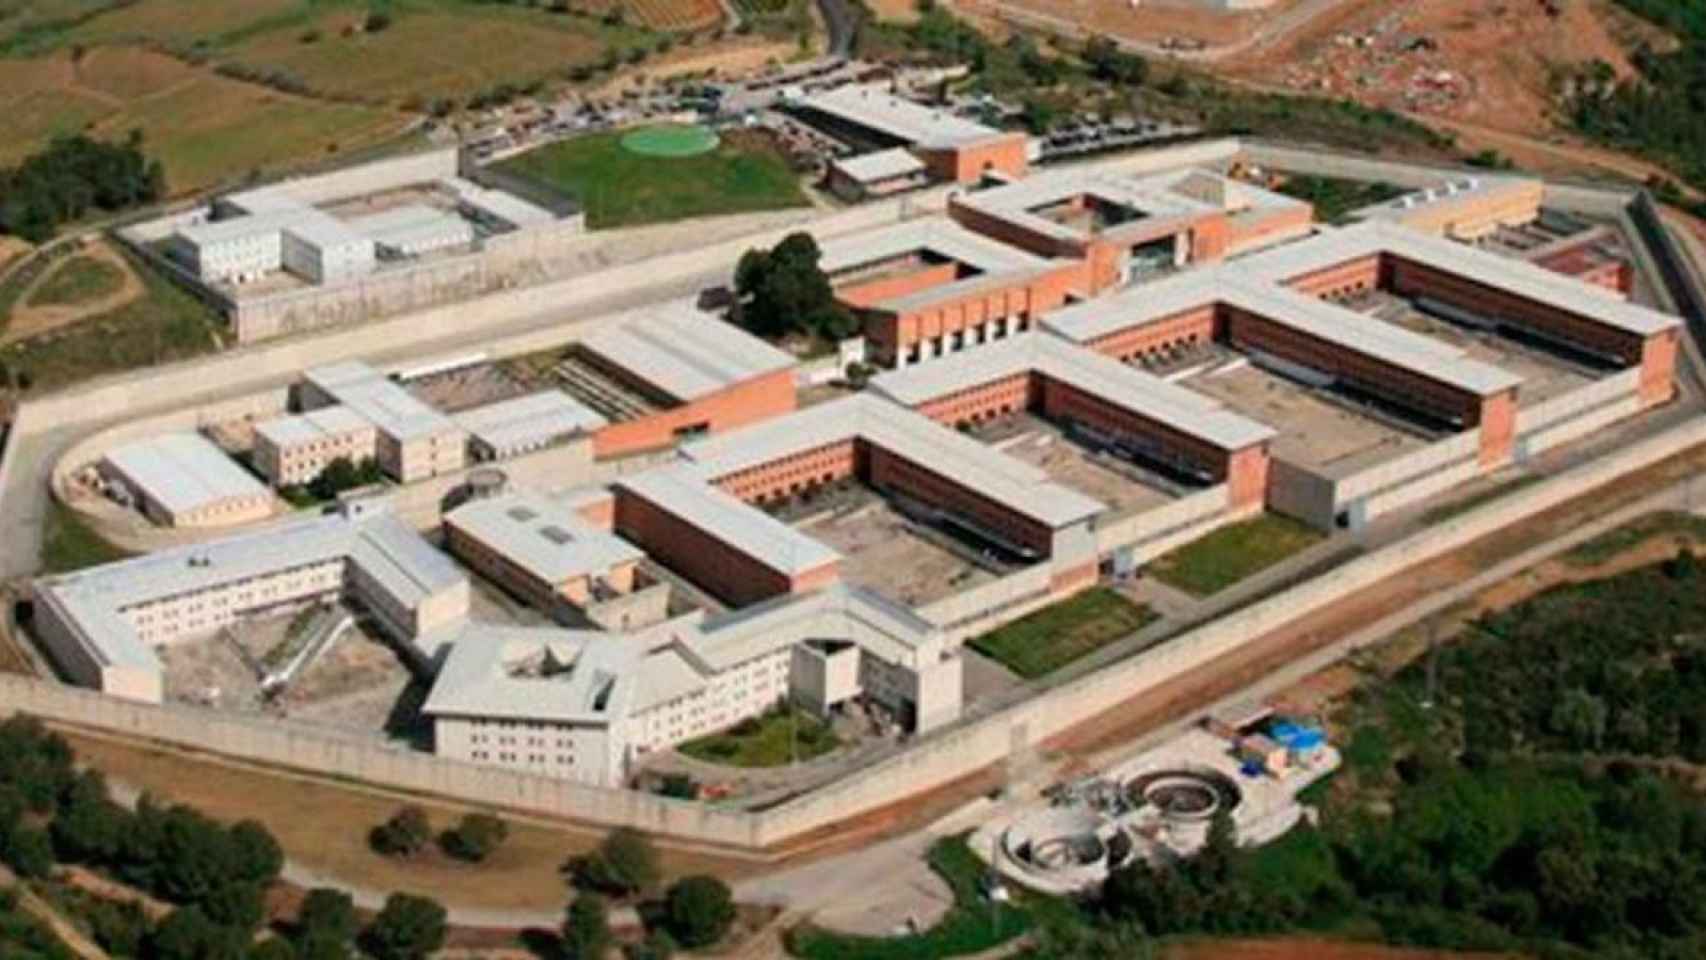 Vista aérea de la prisión de Brians / DEPARTAMENTO DE JUSTICIA DE CATALUÑA